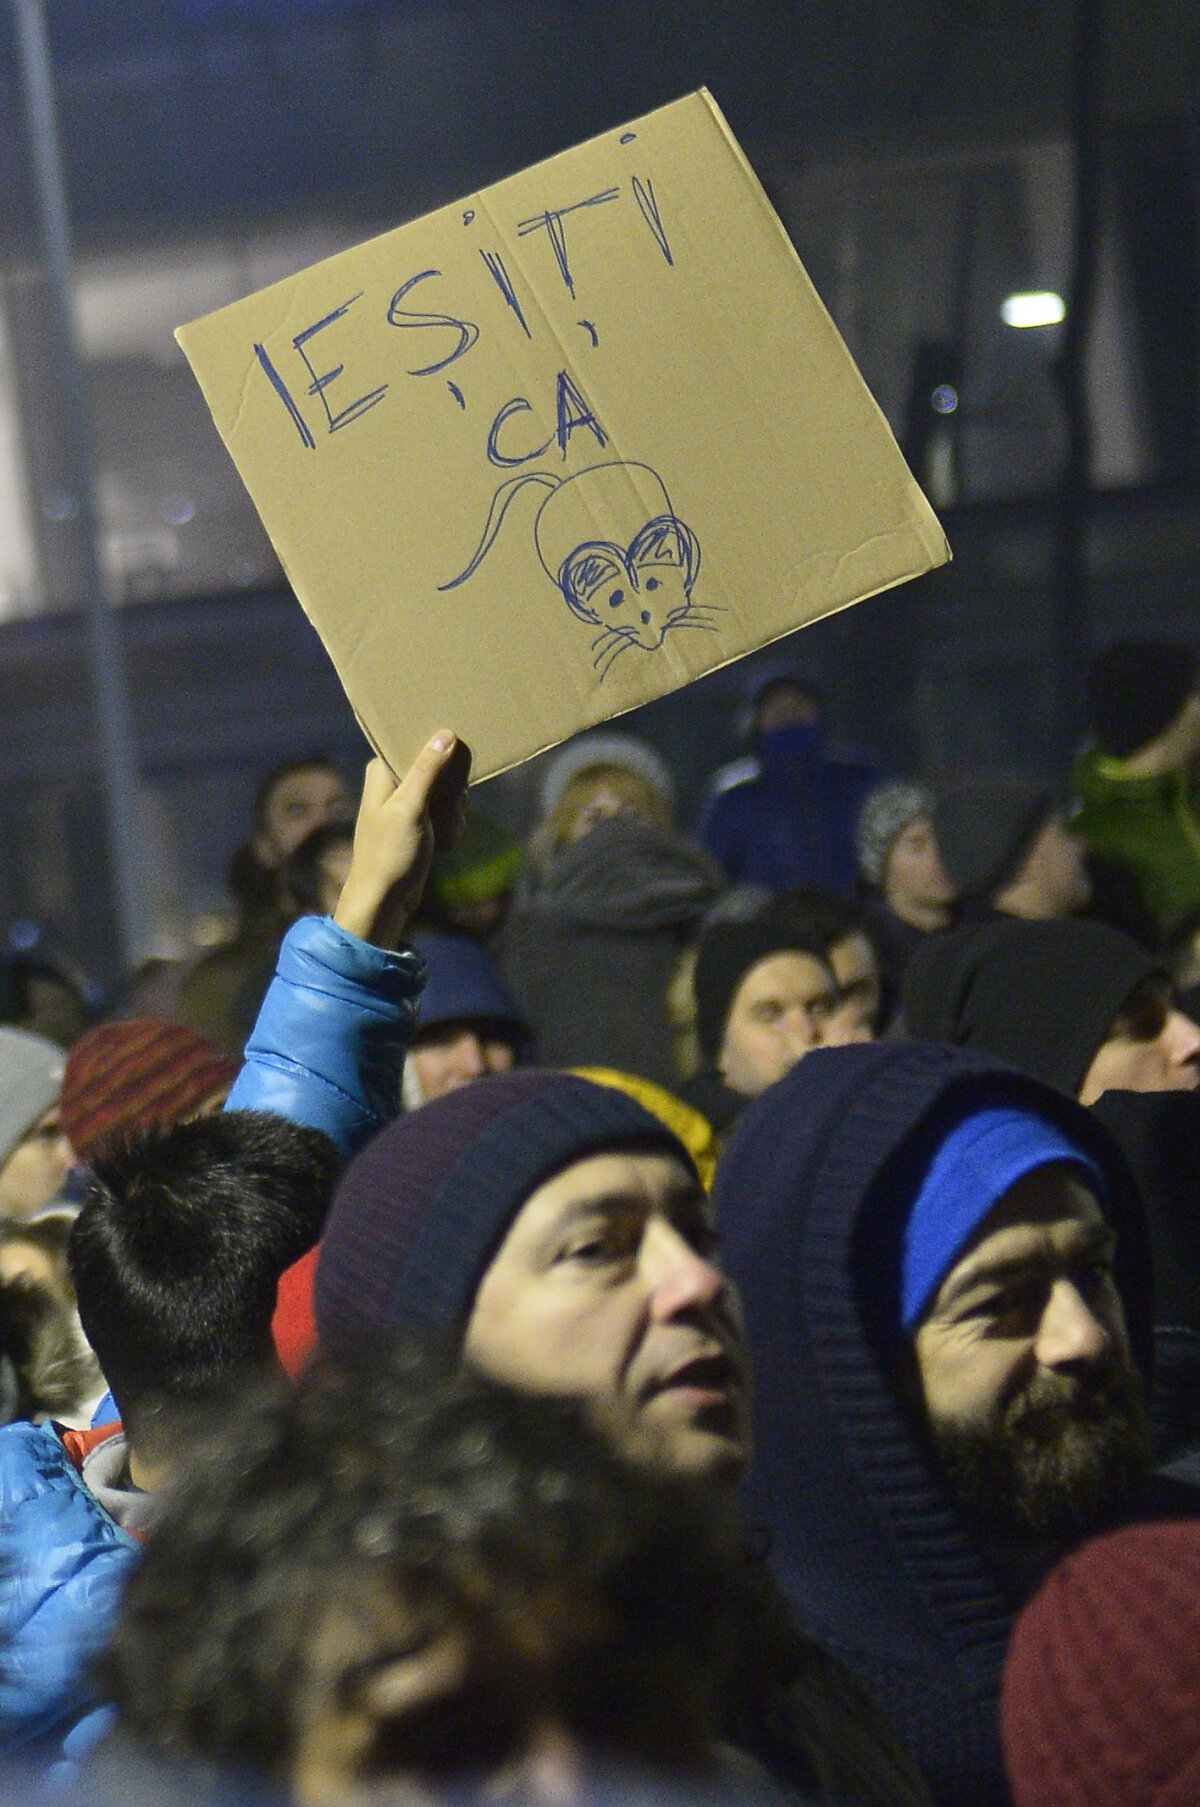 FOTO Stupoare în mijlocul protestului: e incredibil ce scria pe bannerul unui participant